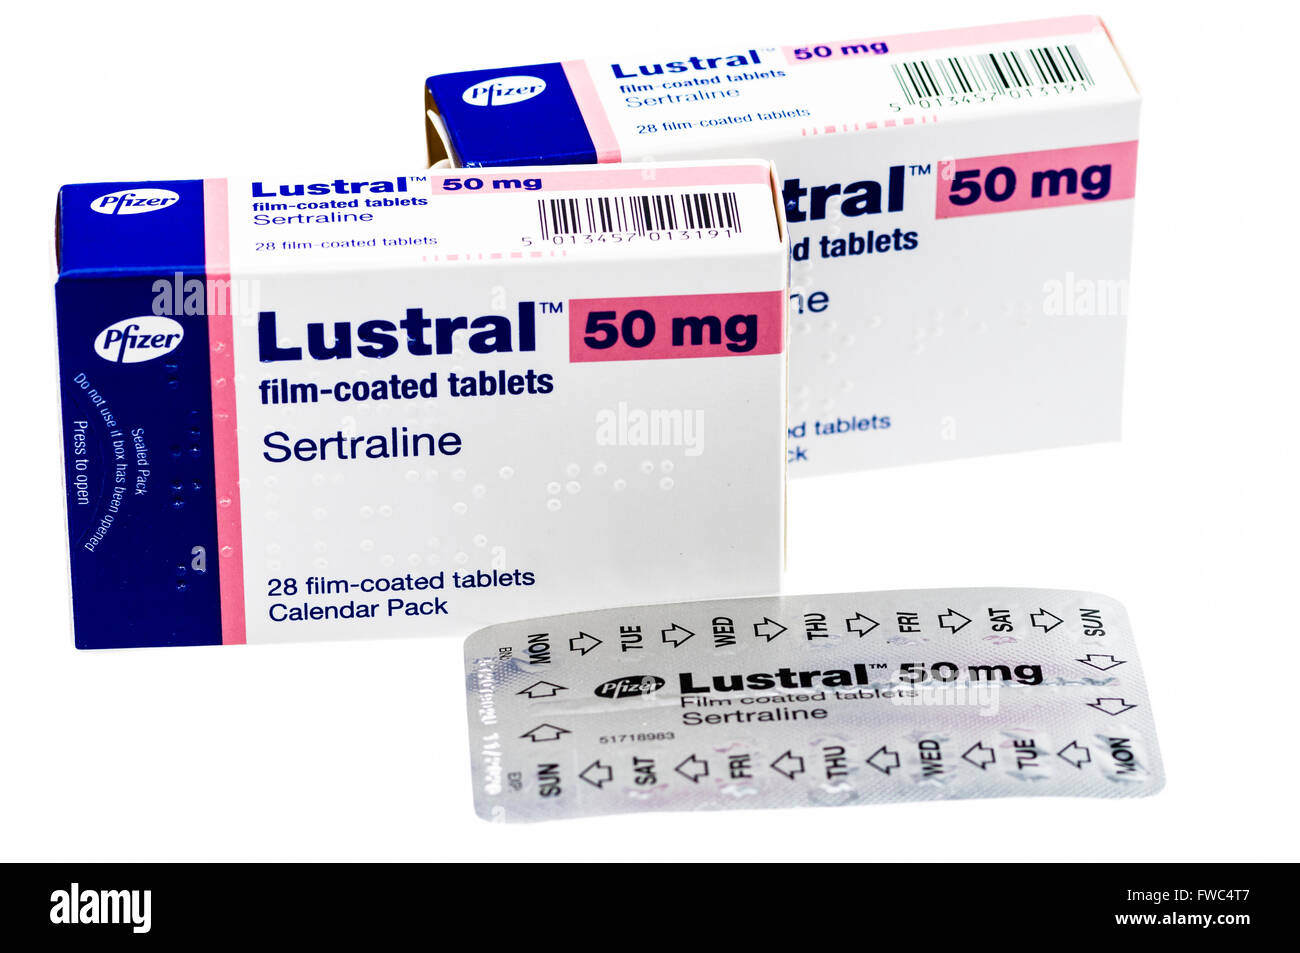 Lustral (Pfizer) Tabletten, der Marke Sertralin SSRI Antidepressiva. Stockfoto